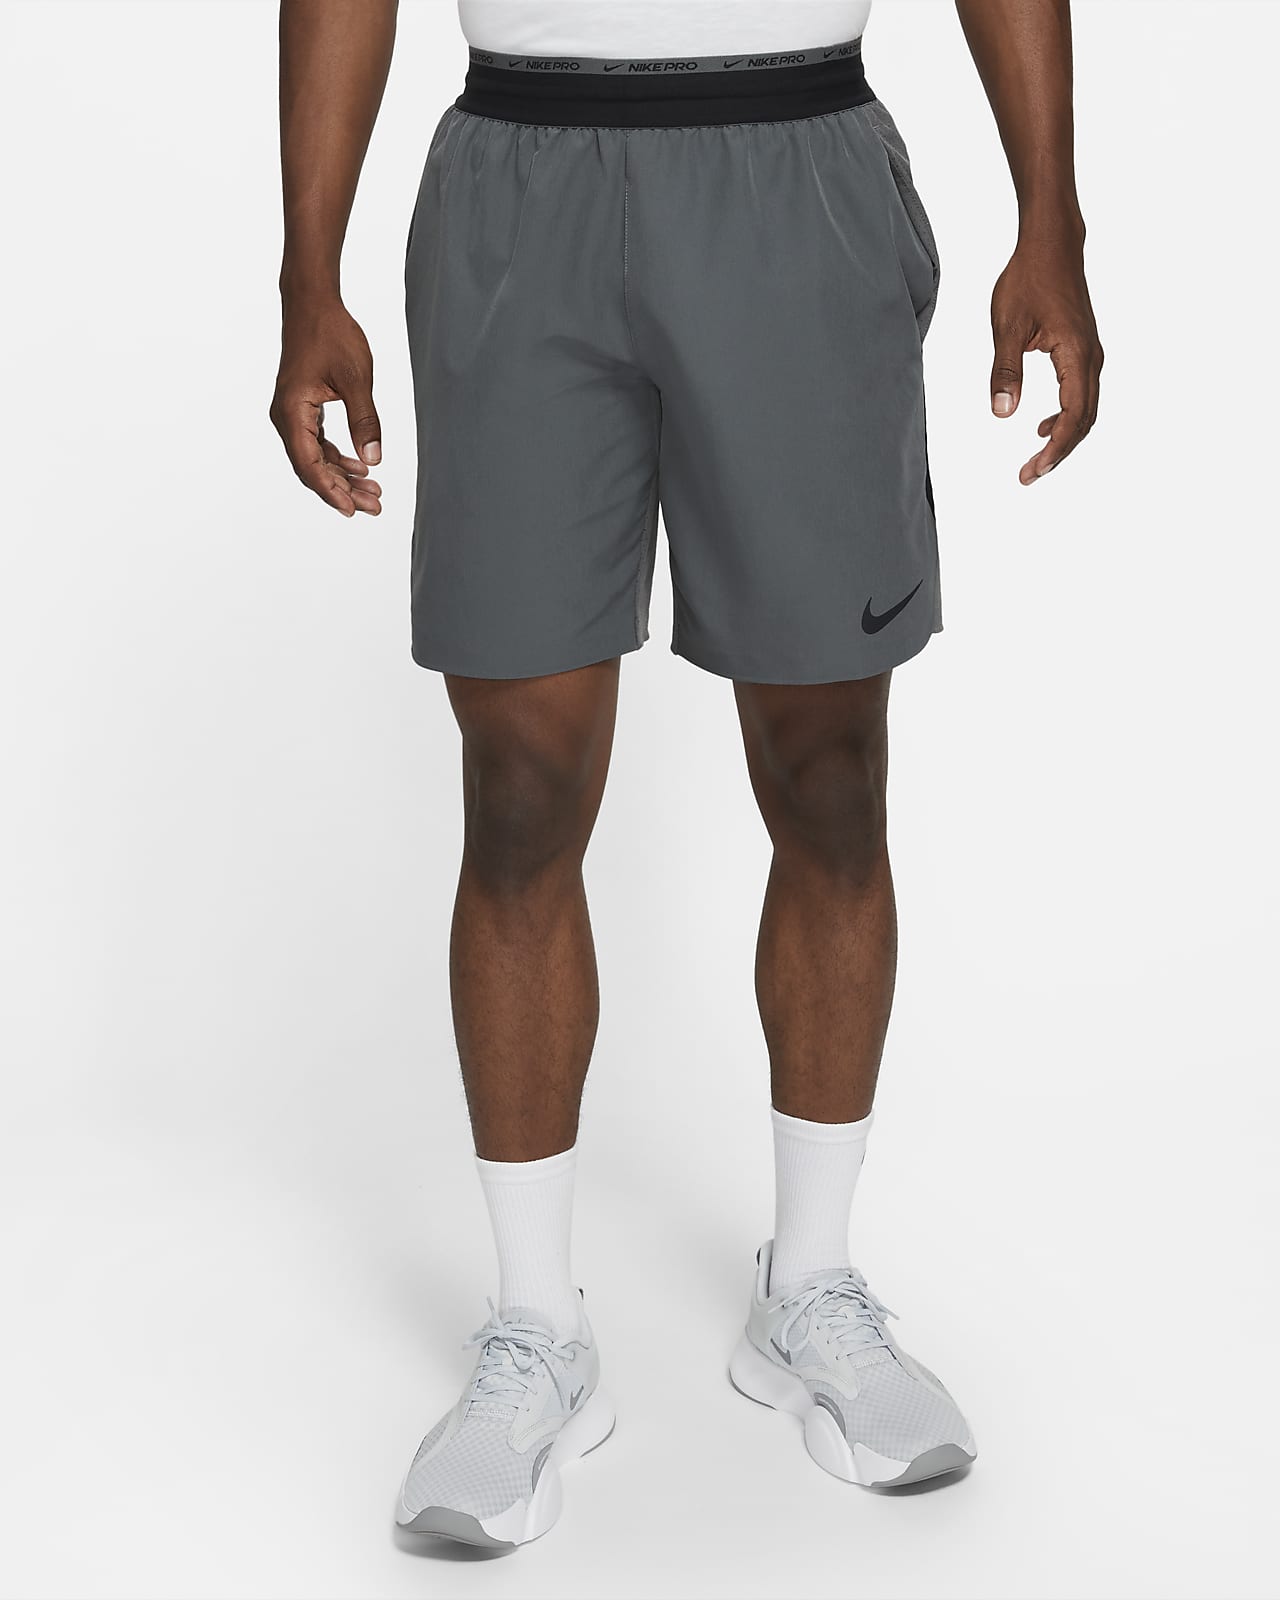 Nike Dri-FIT Flex Rep Pro Collection 20 cm-es, bélés nélküli férfi edzőrövidnadrág